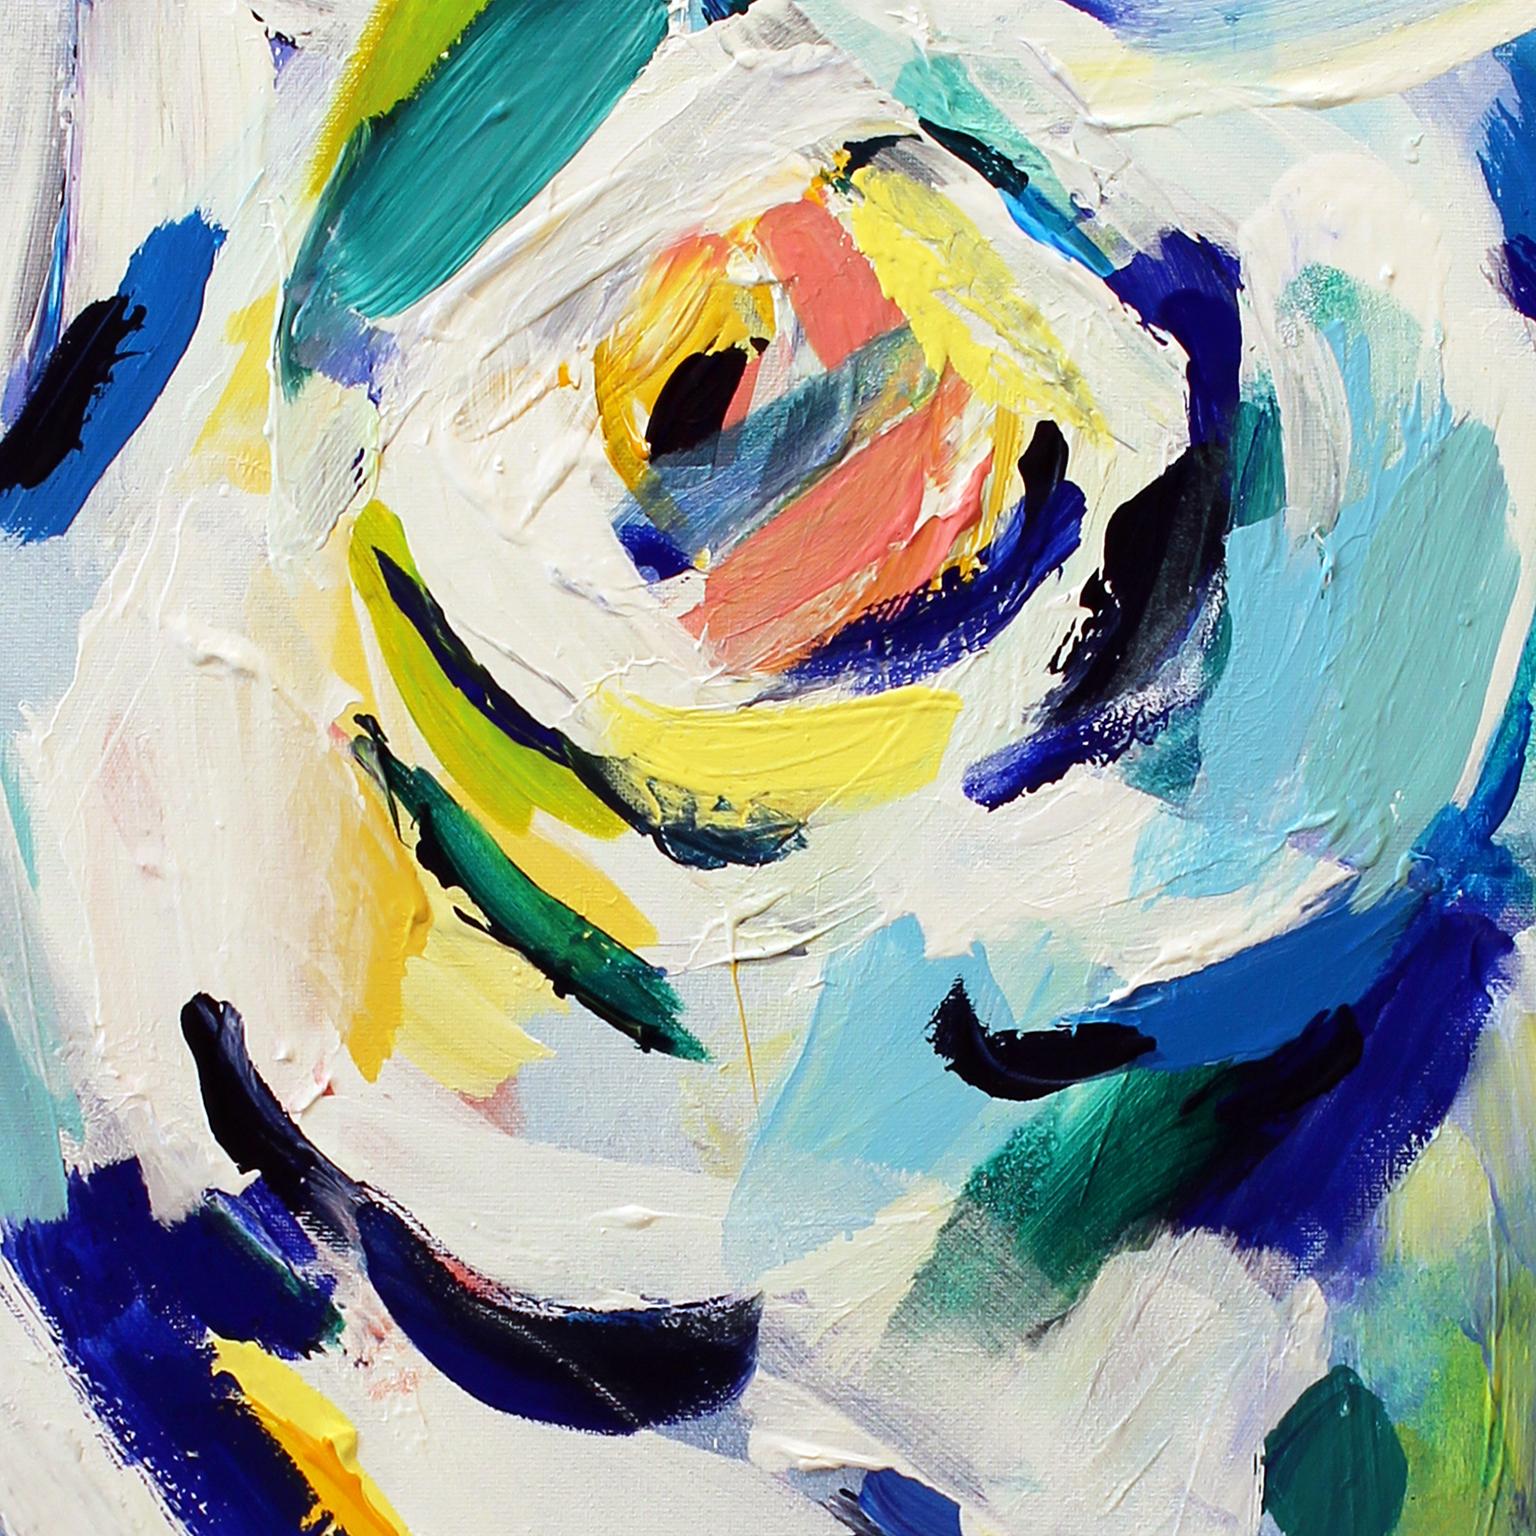 Masha Potapenkova, Weiße Rose, 2018, Öl auf Leinwand, 70 x 60 cm (27x23 Zoll) (Abstrakter Expressionismus), Painting, von Masha  Potapenkova